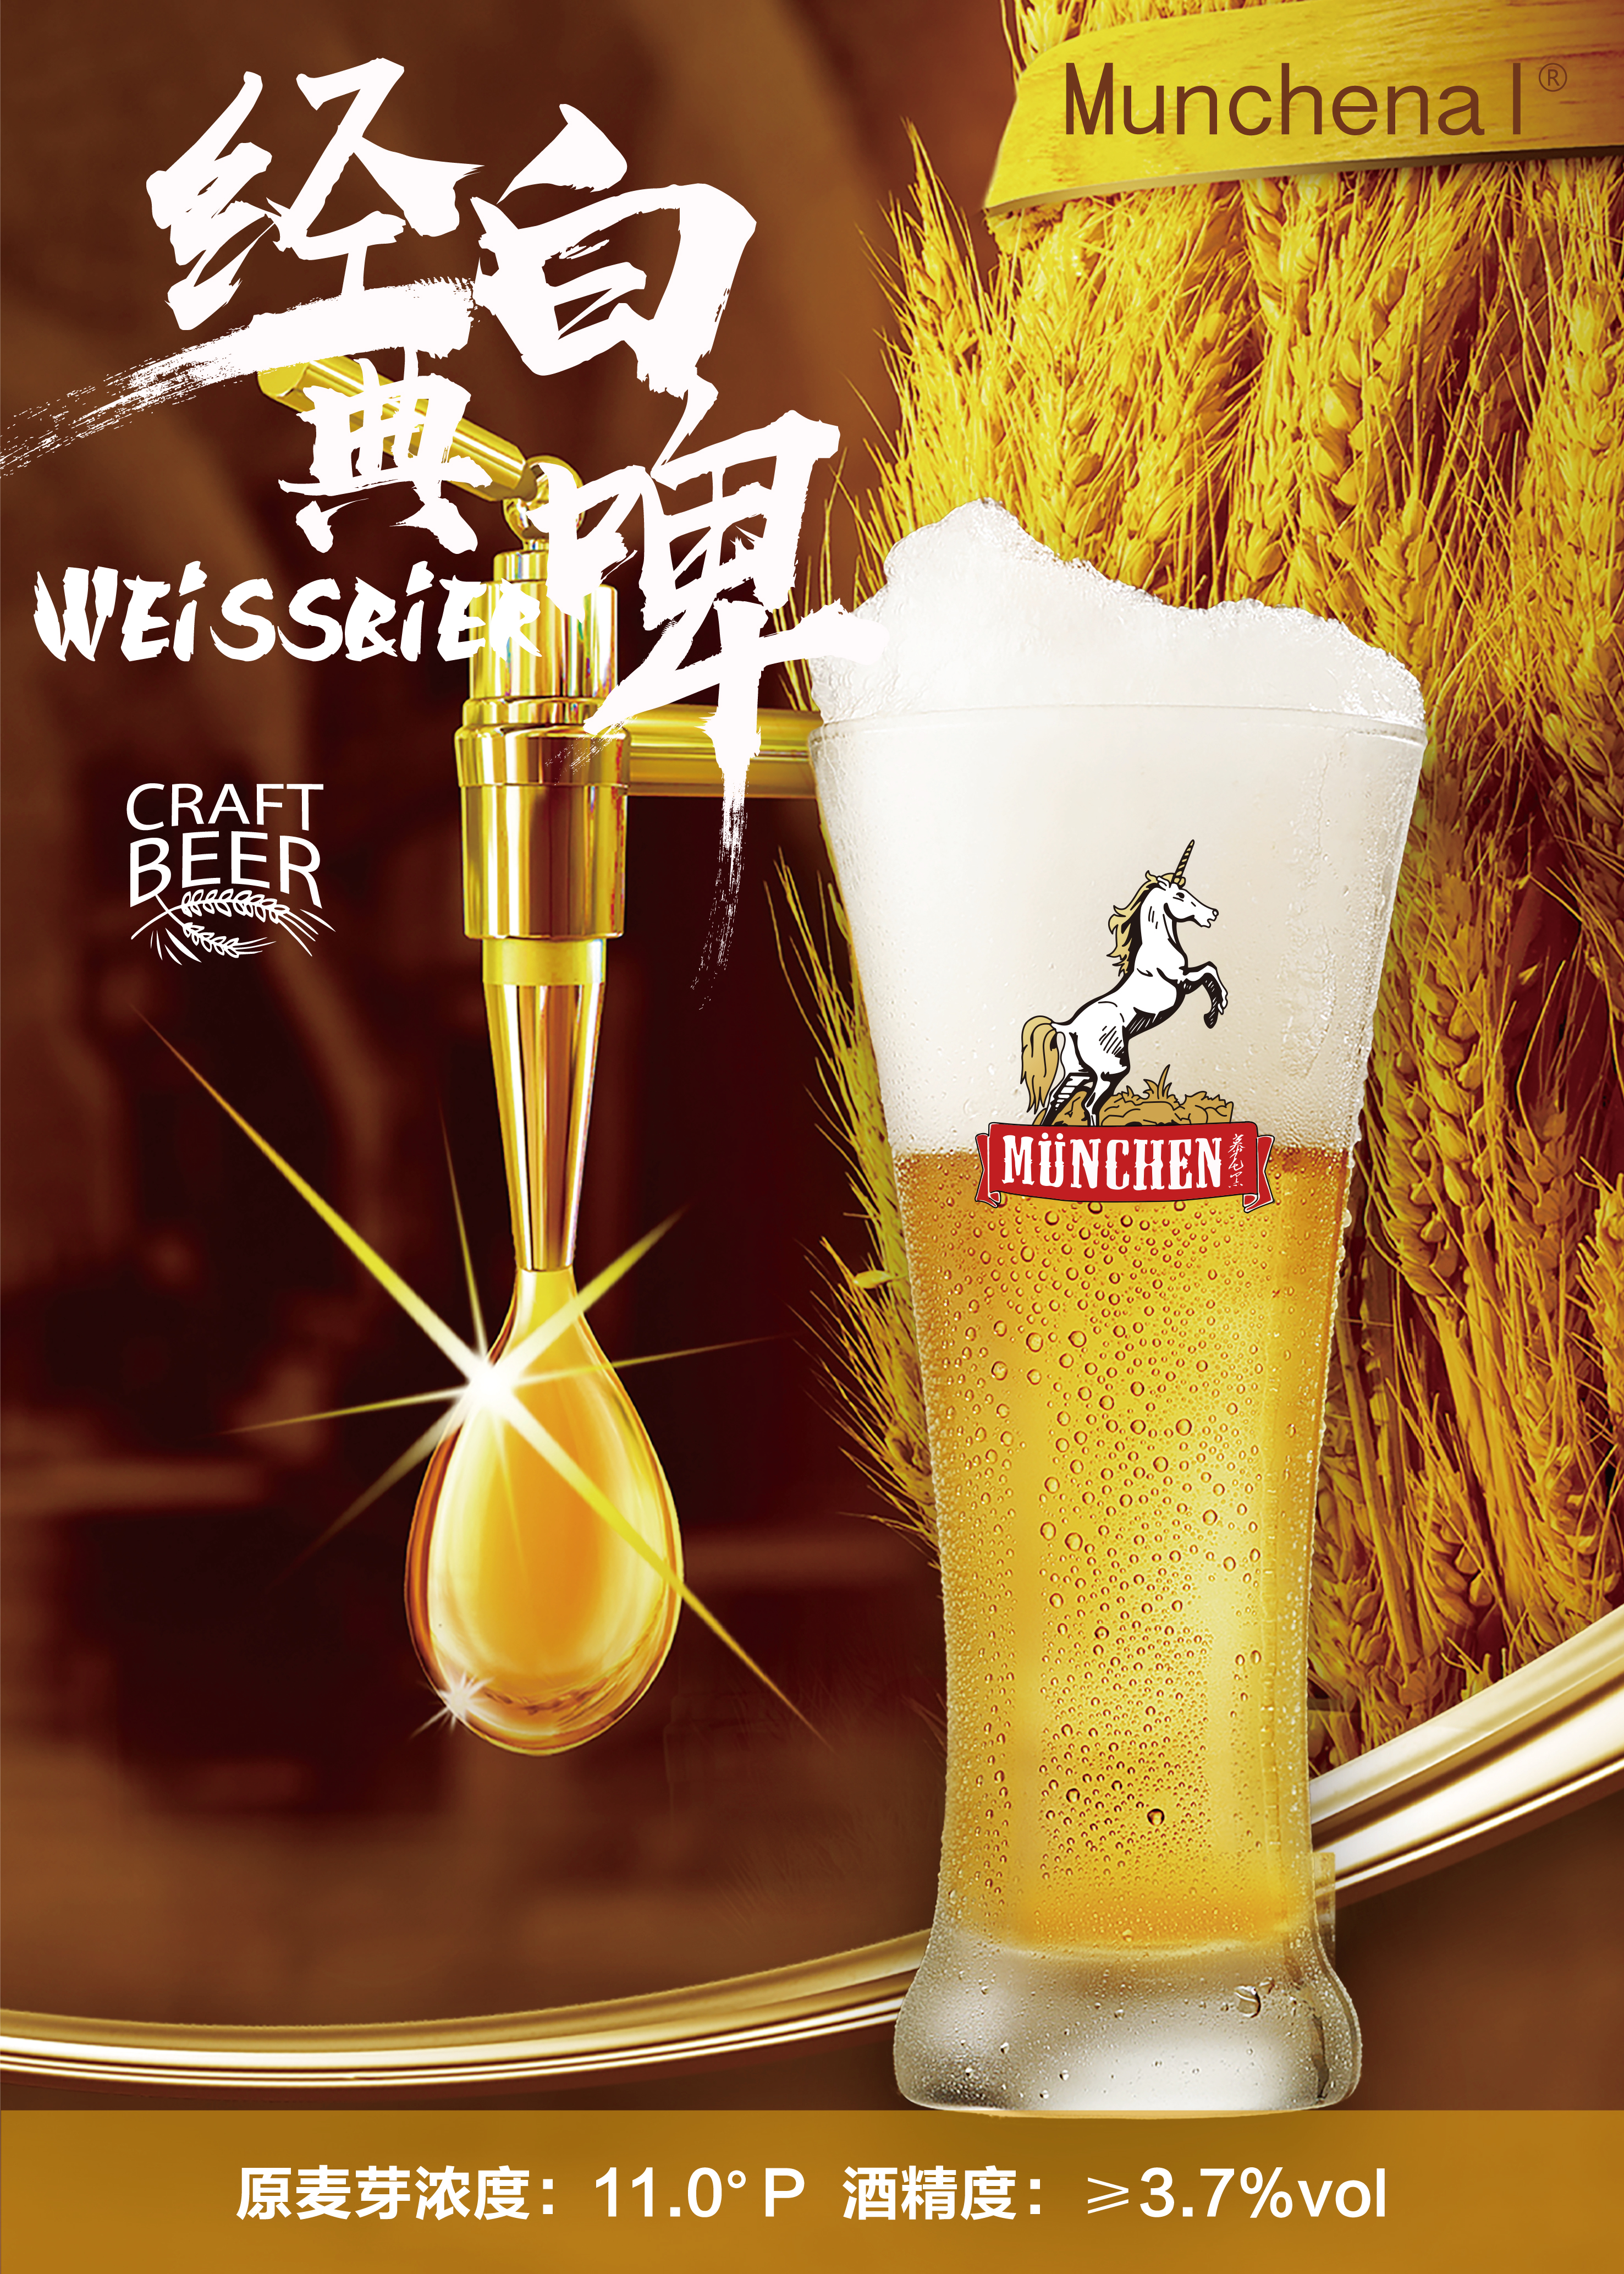 青岛扎啤广告宣传图片图片